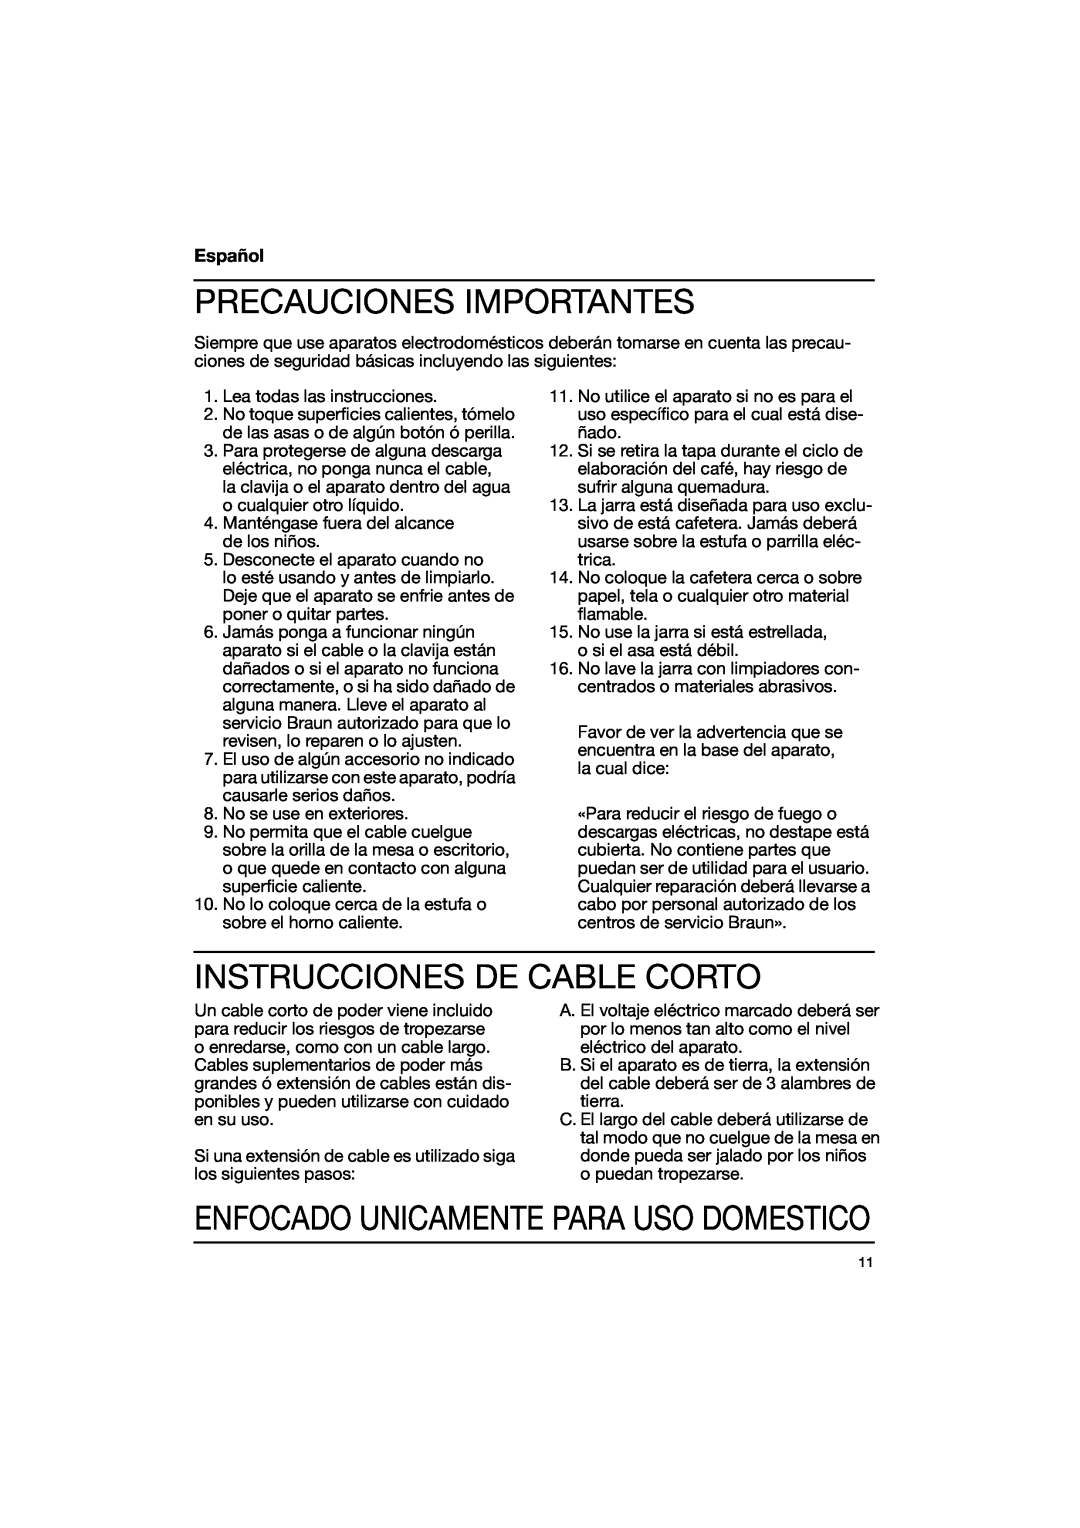 Braun 3114, 3113 Precauciones Importantes, Instrucciones De Cable Corto, Enfocado Unicamente Para Uso Domestico, Español 